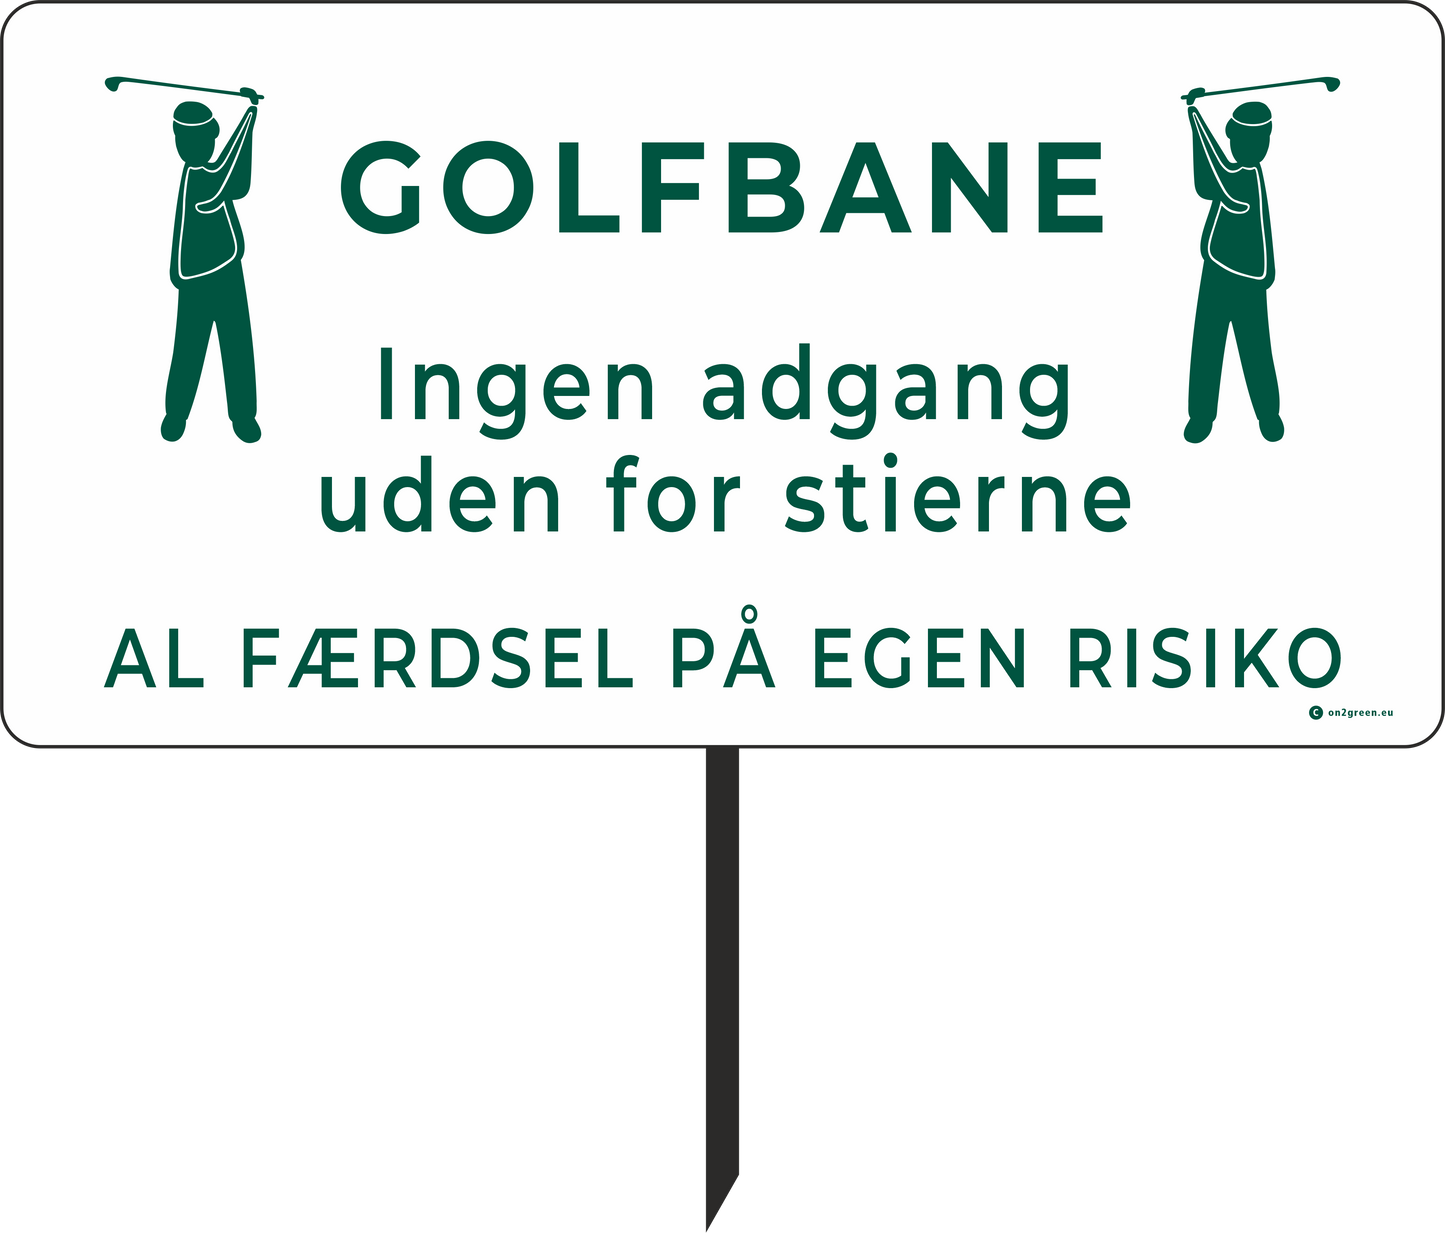 Golfskylt art. 181: "Golfbana" (60x31 cm)